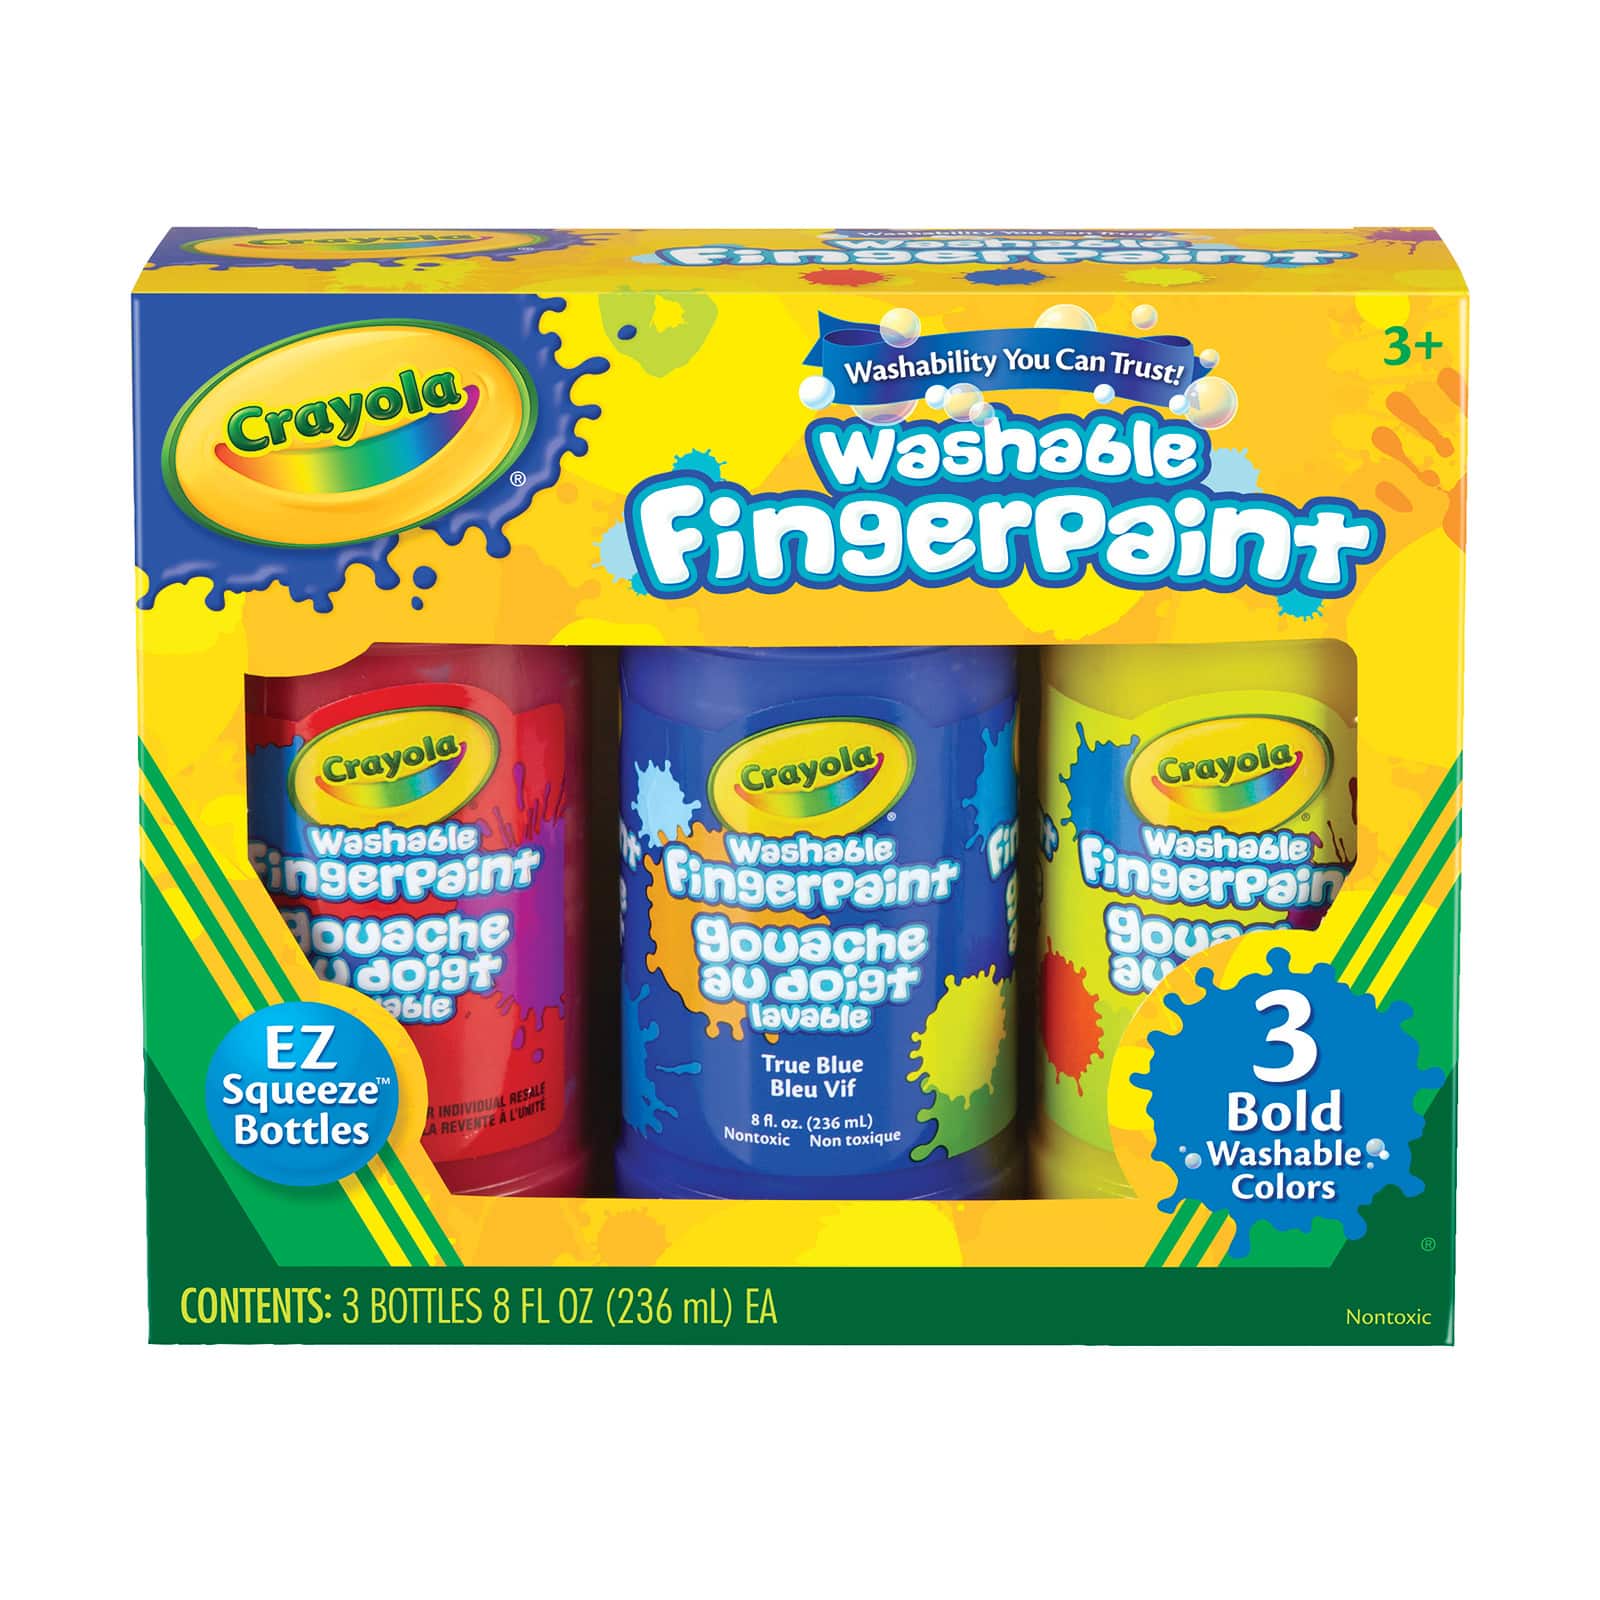 Arteza Finger Paints for Toddlers Nontoxic Set of 30 Colors 1 FL Oz